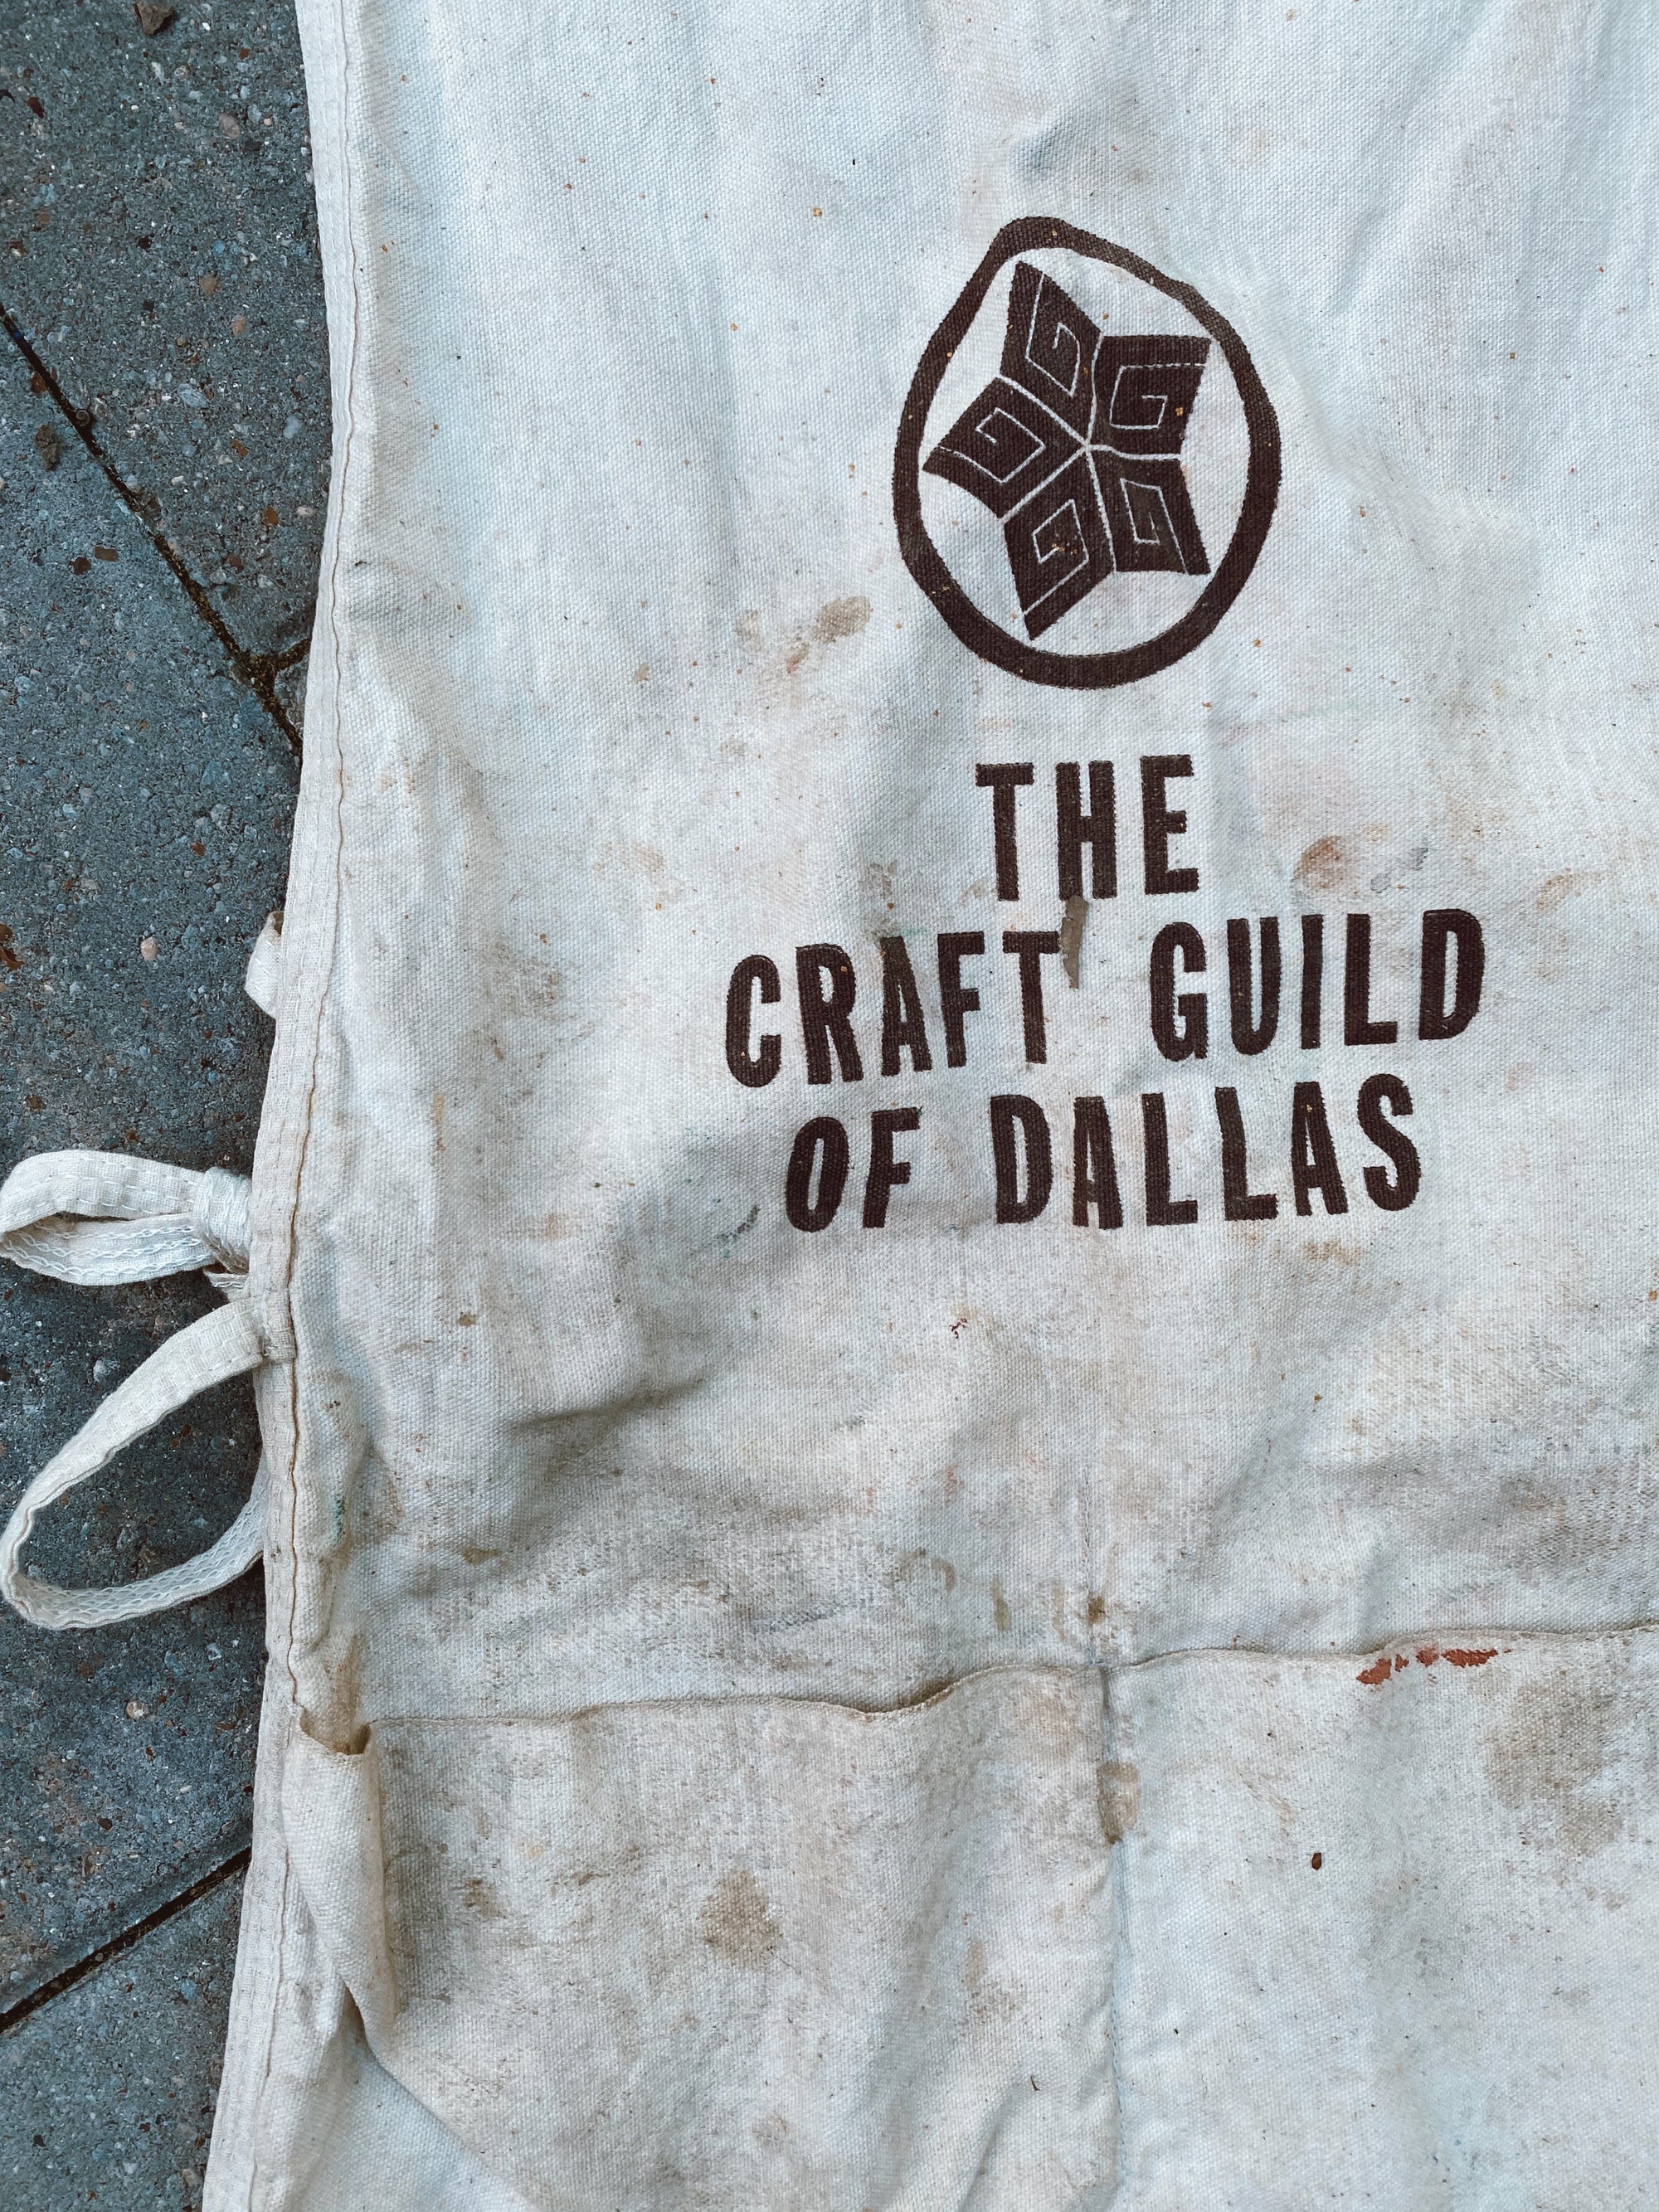 Vintage "Craft Guild of Dallas" Apron